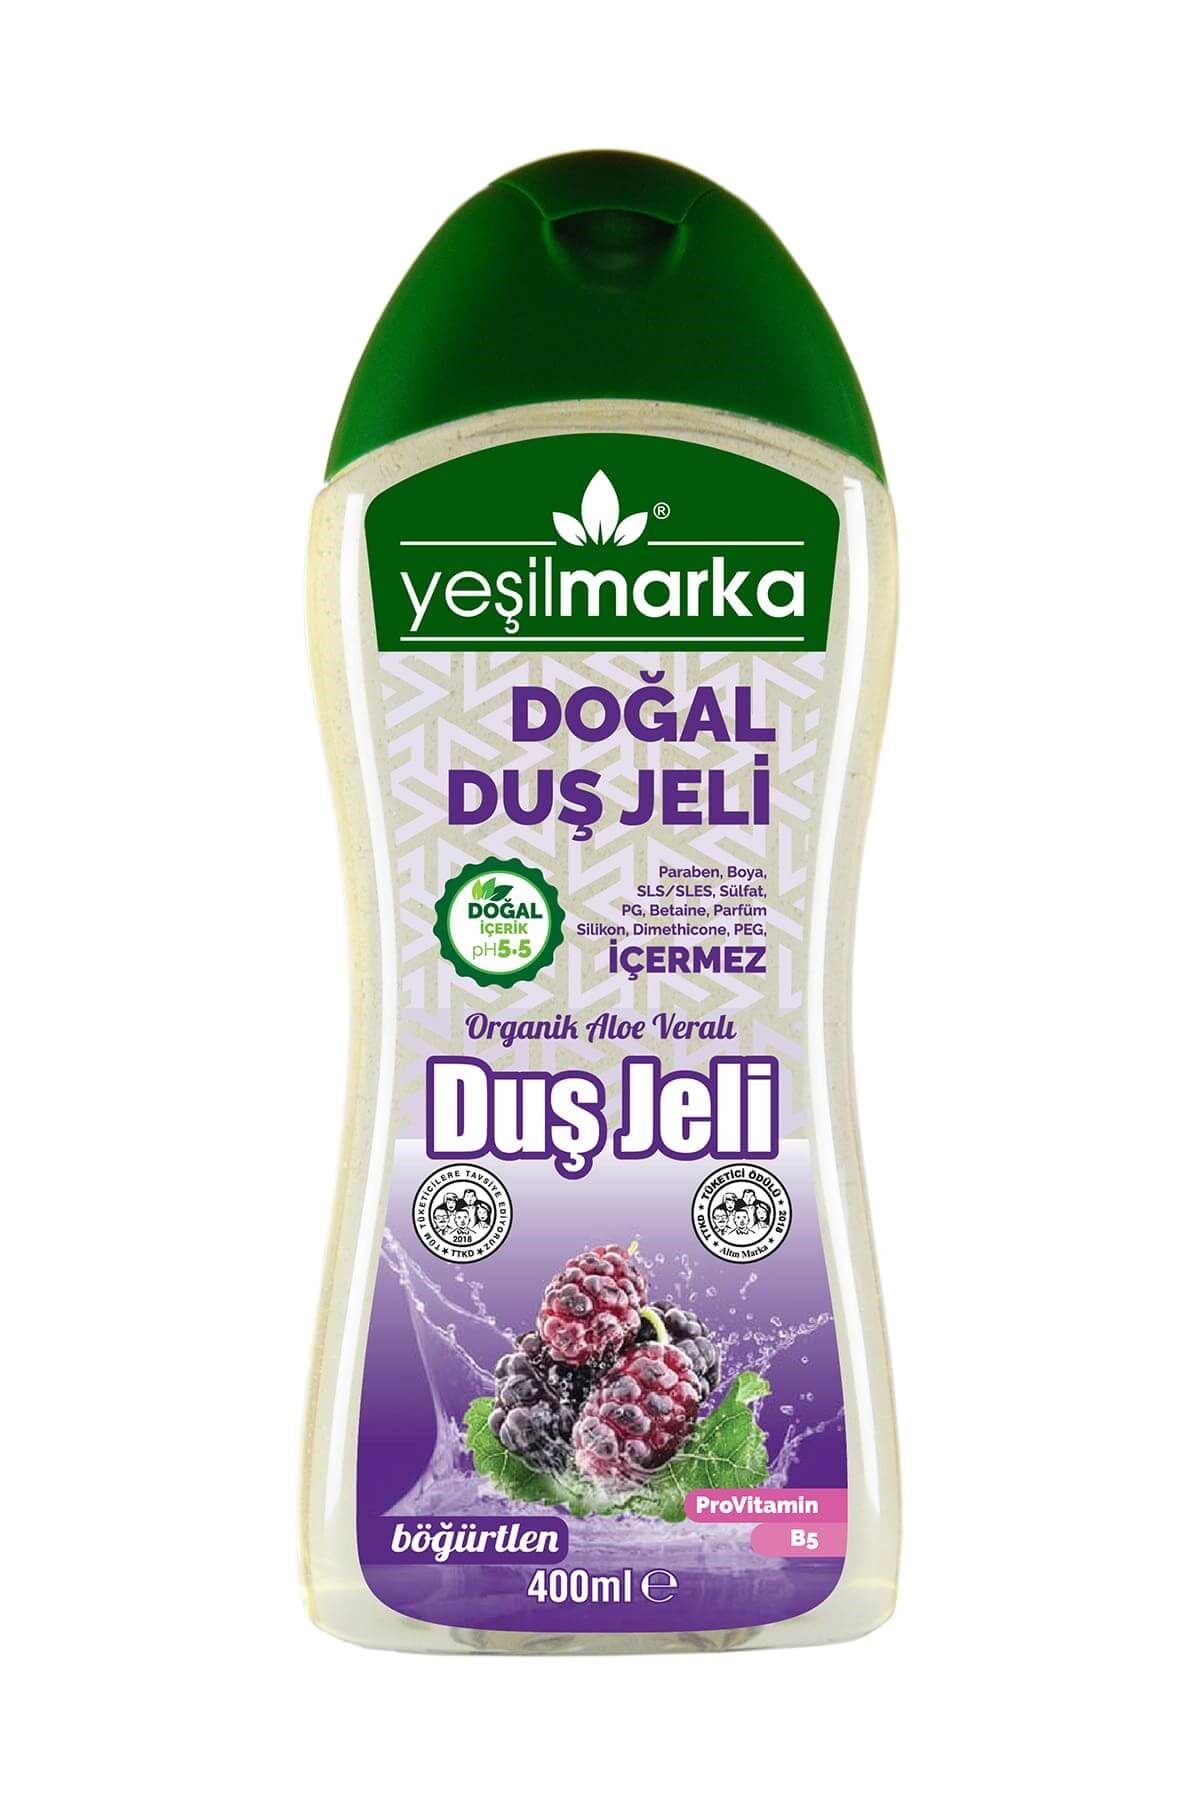 Yeşilmarka Doğal Duş Jeli - Böğürtlen helalsitesi.com